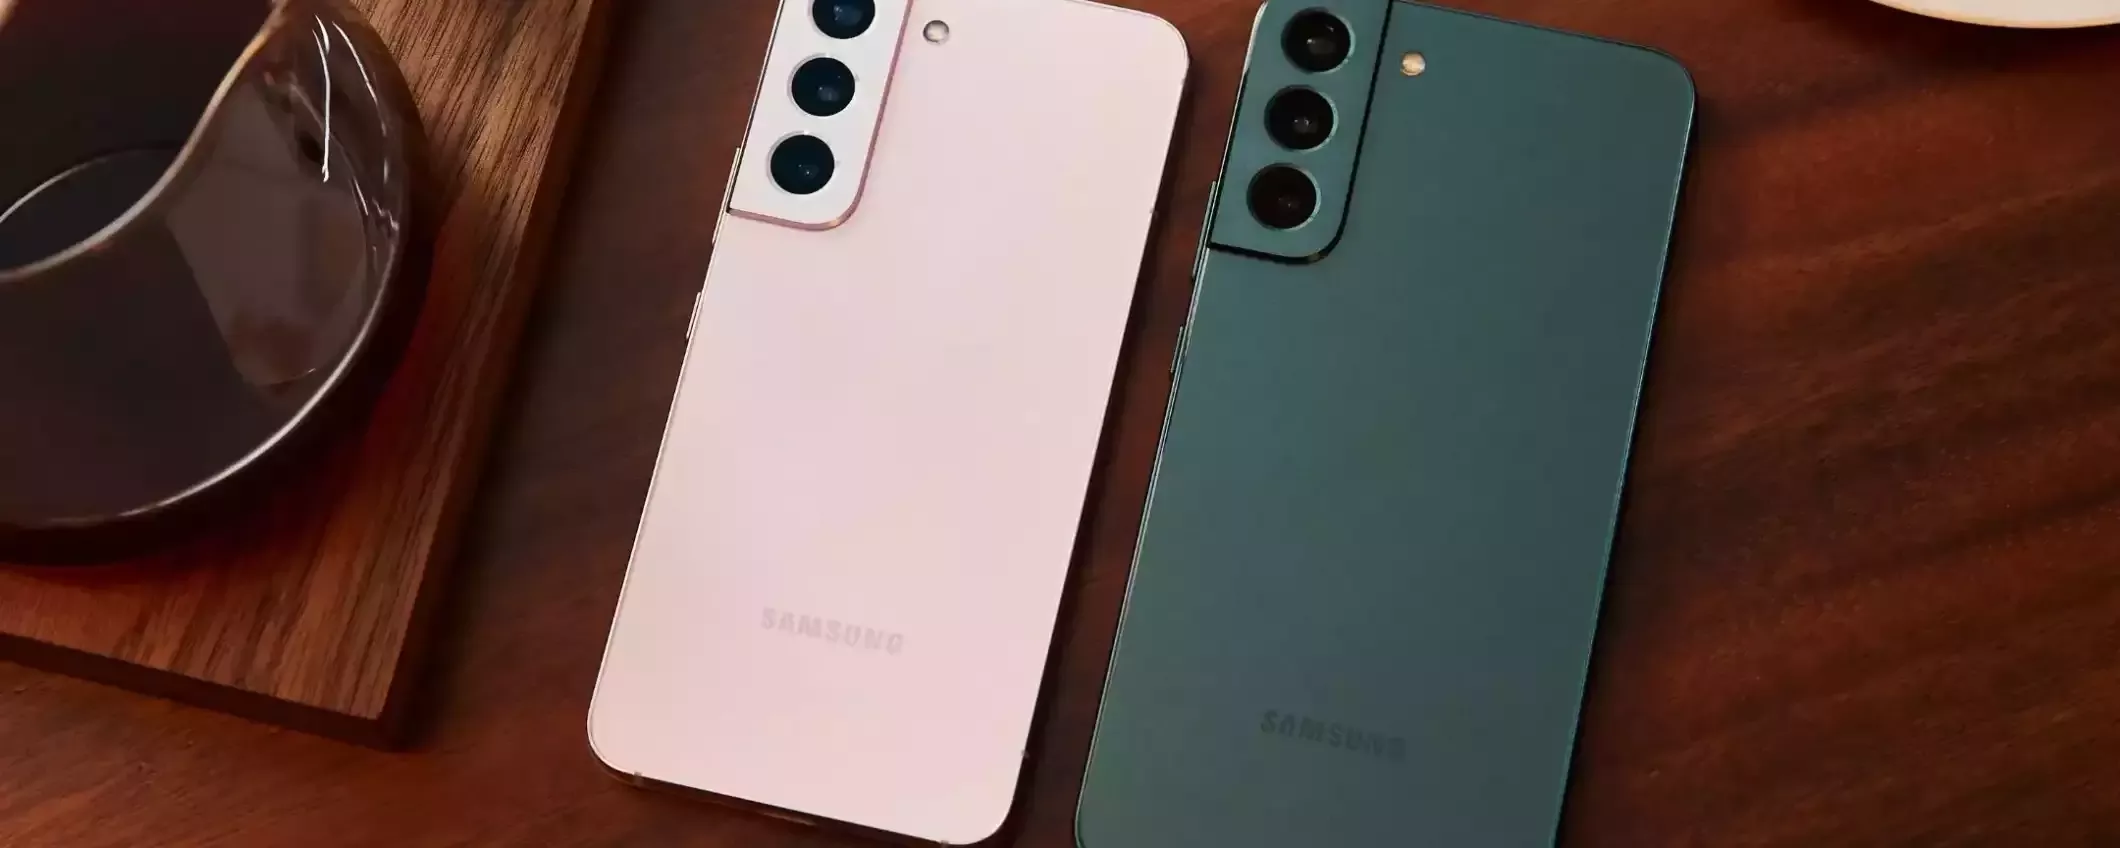 Samsung Galaxy S21 5G a 499,99€: ha ancora senso nel 2023?